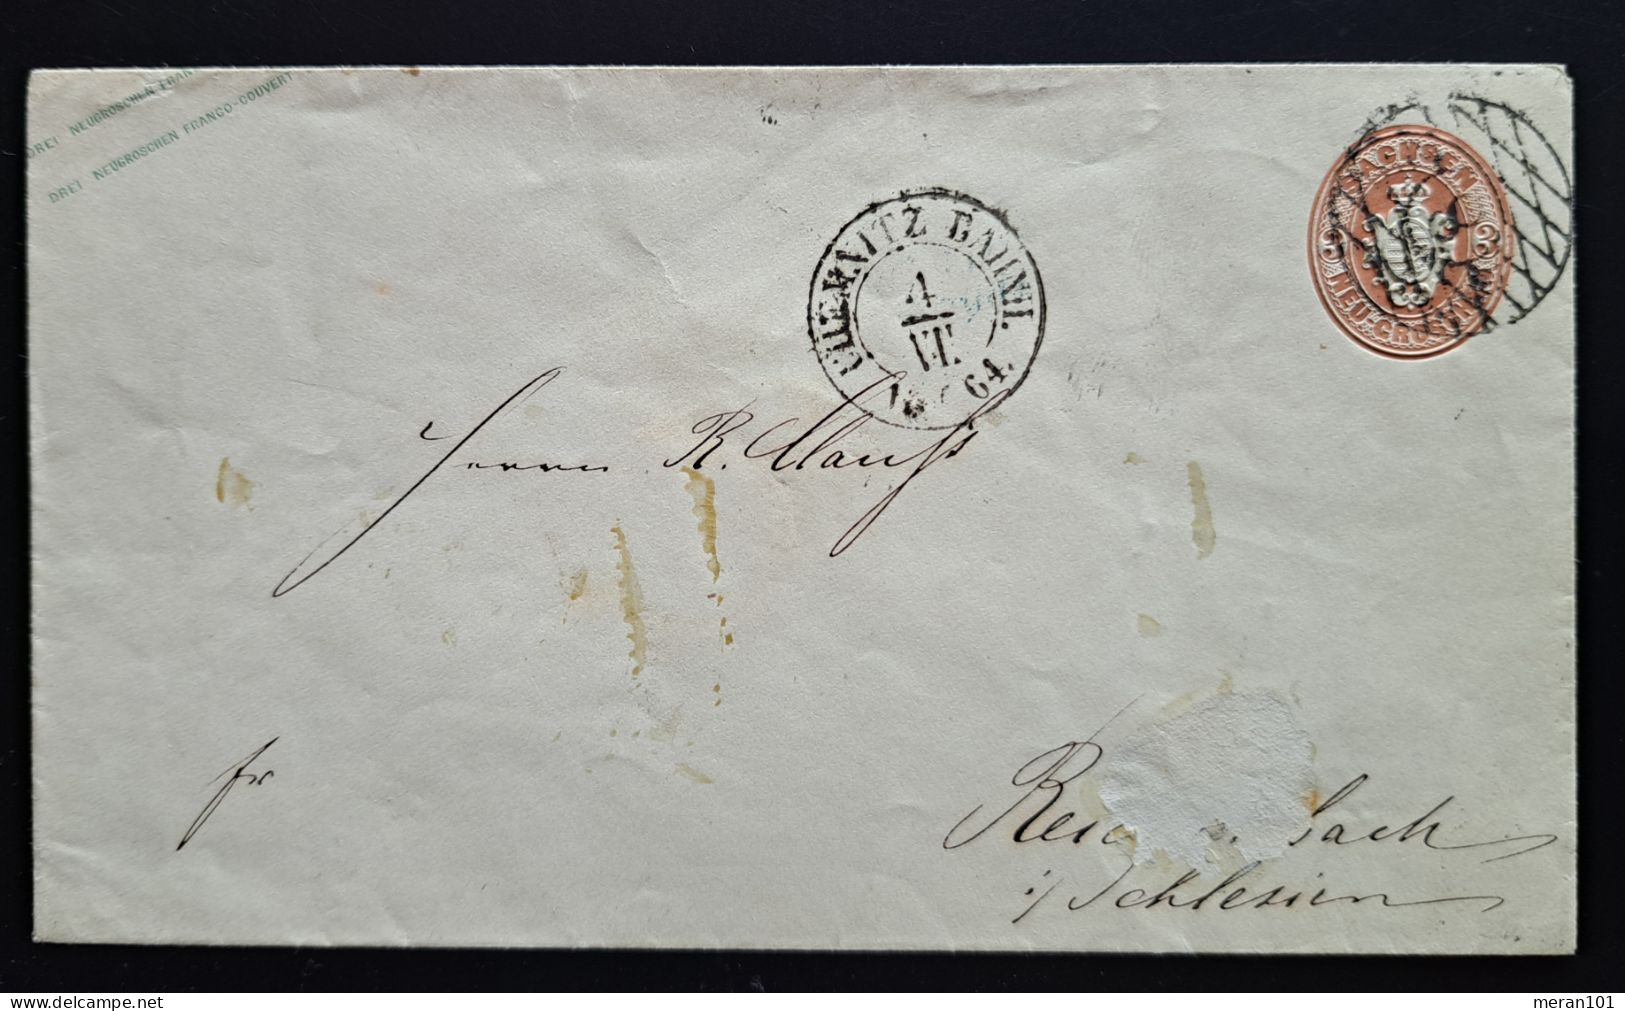 Sachsen 1864, Ganzsache Umschlag CHEMNITZ Nummerngitterstempel - Saxe